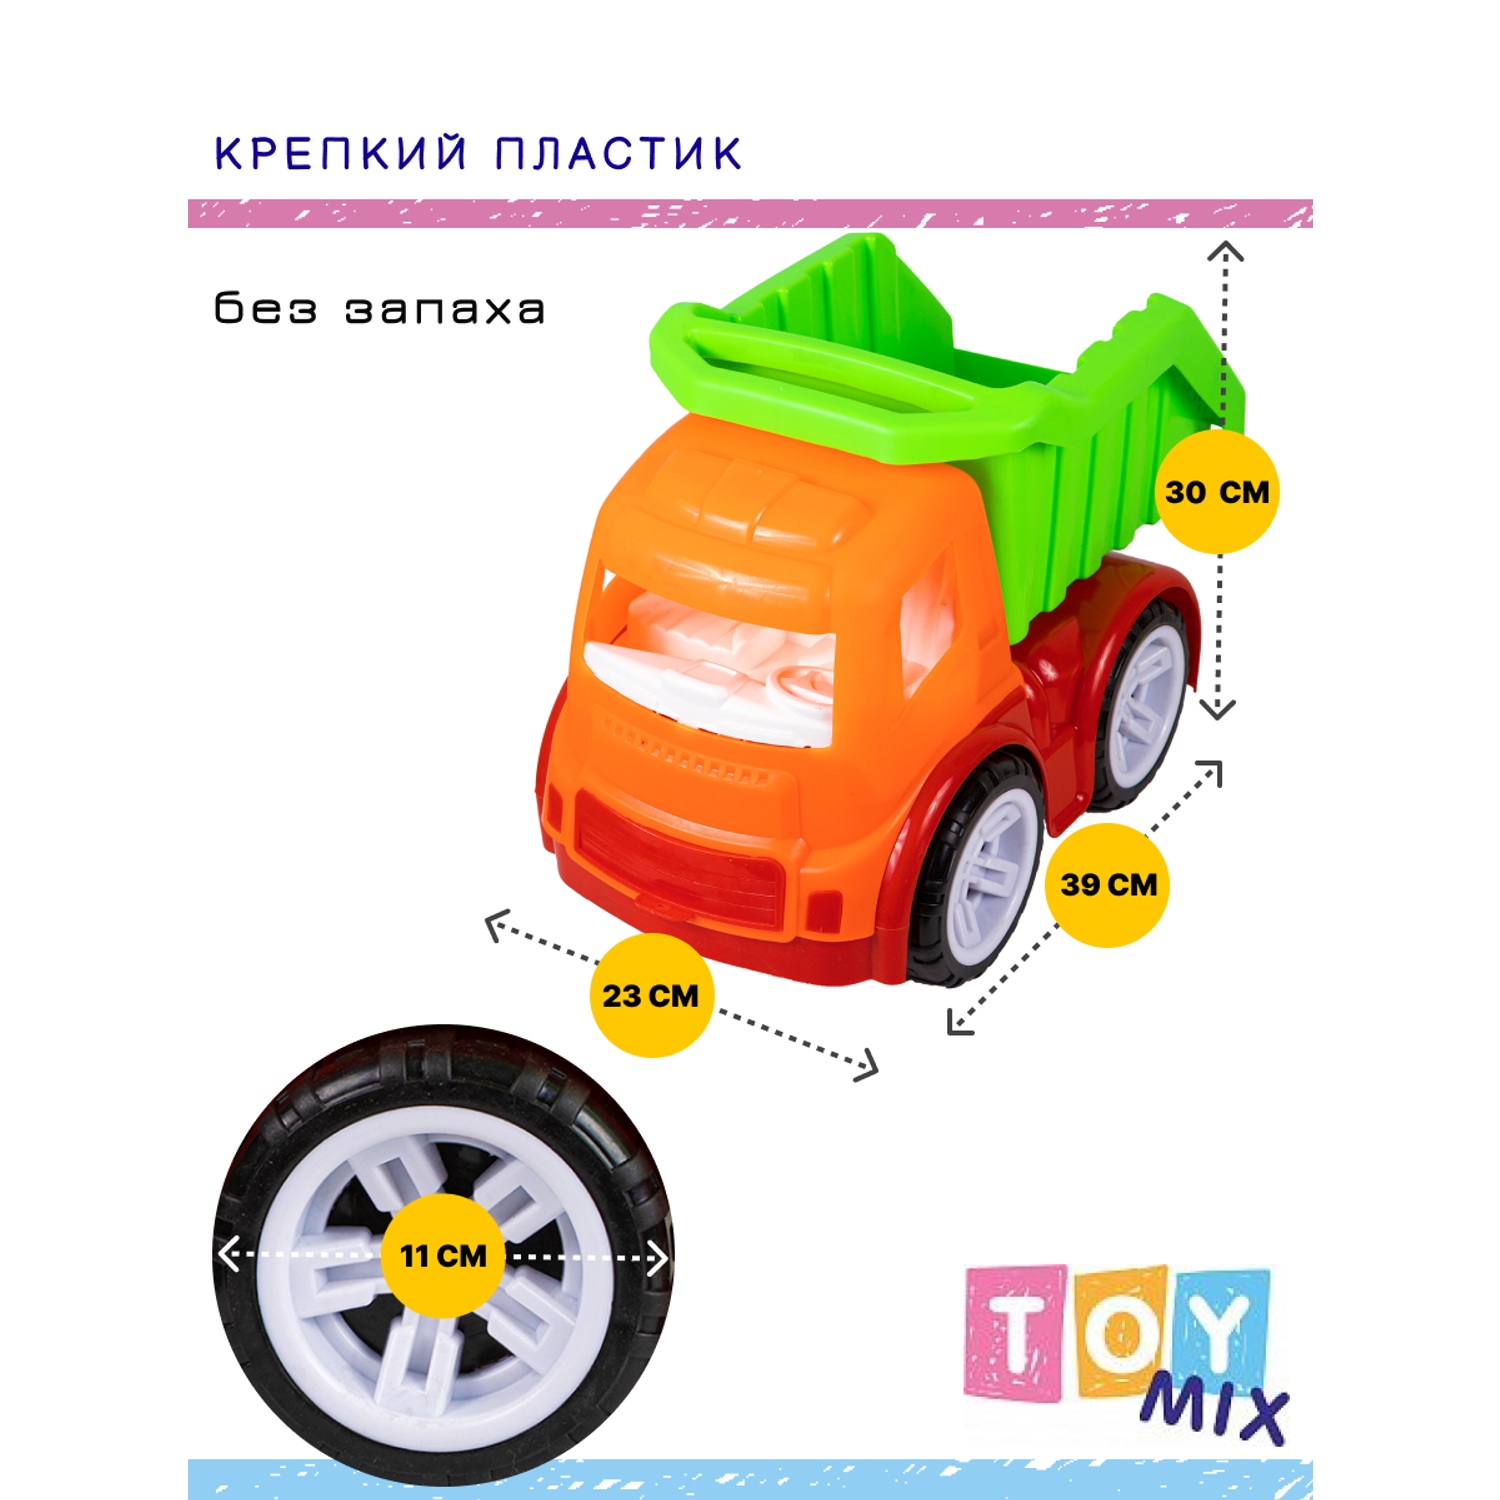 Машина TOY MIX Грузовик размер 39 см РР 2017-024 - фото 3